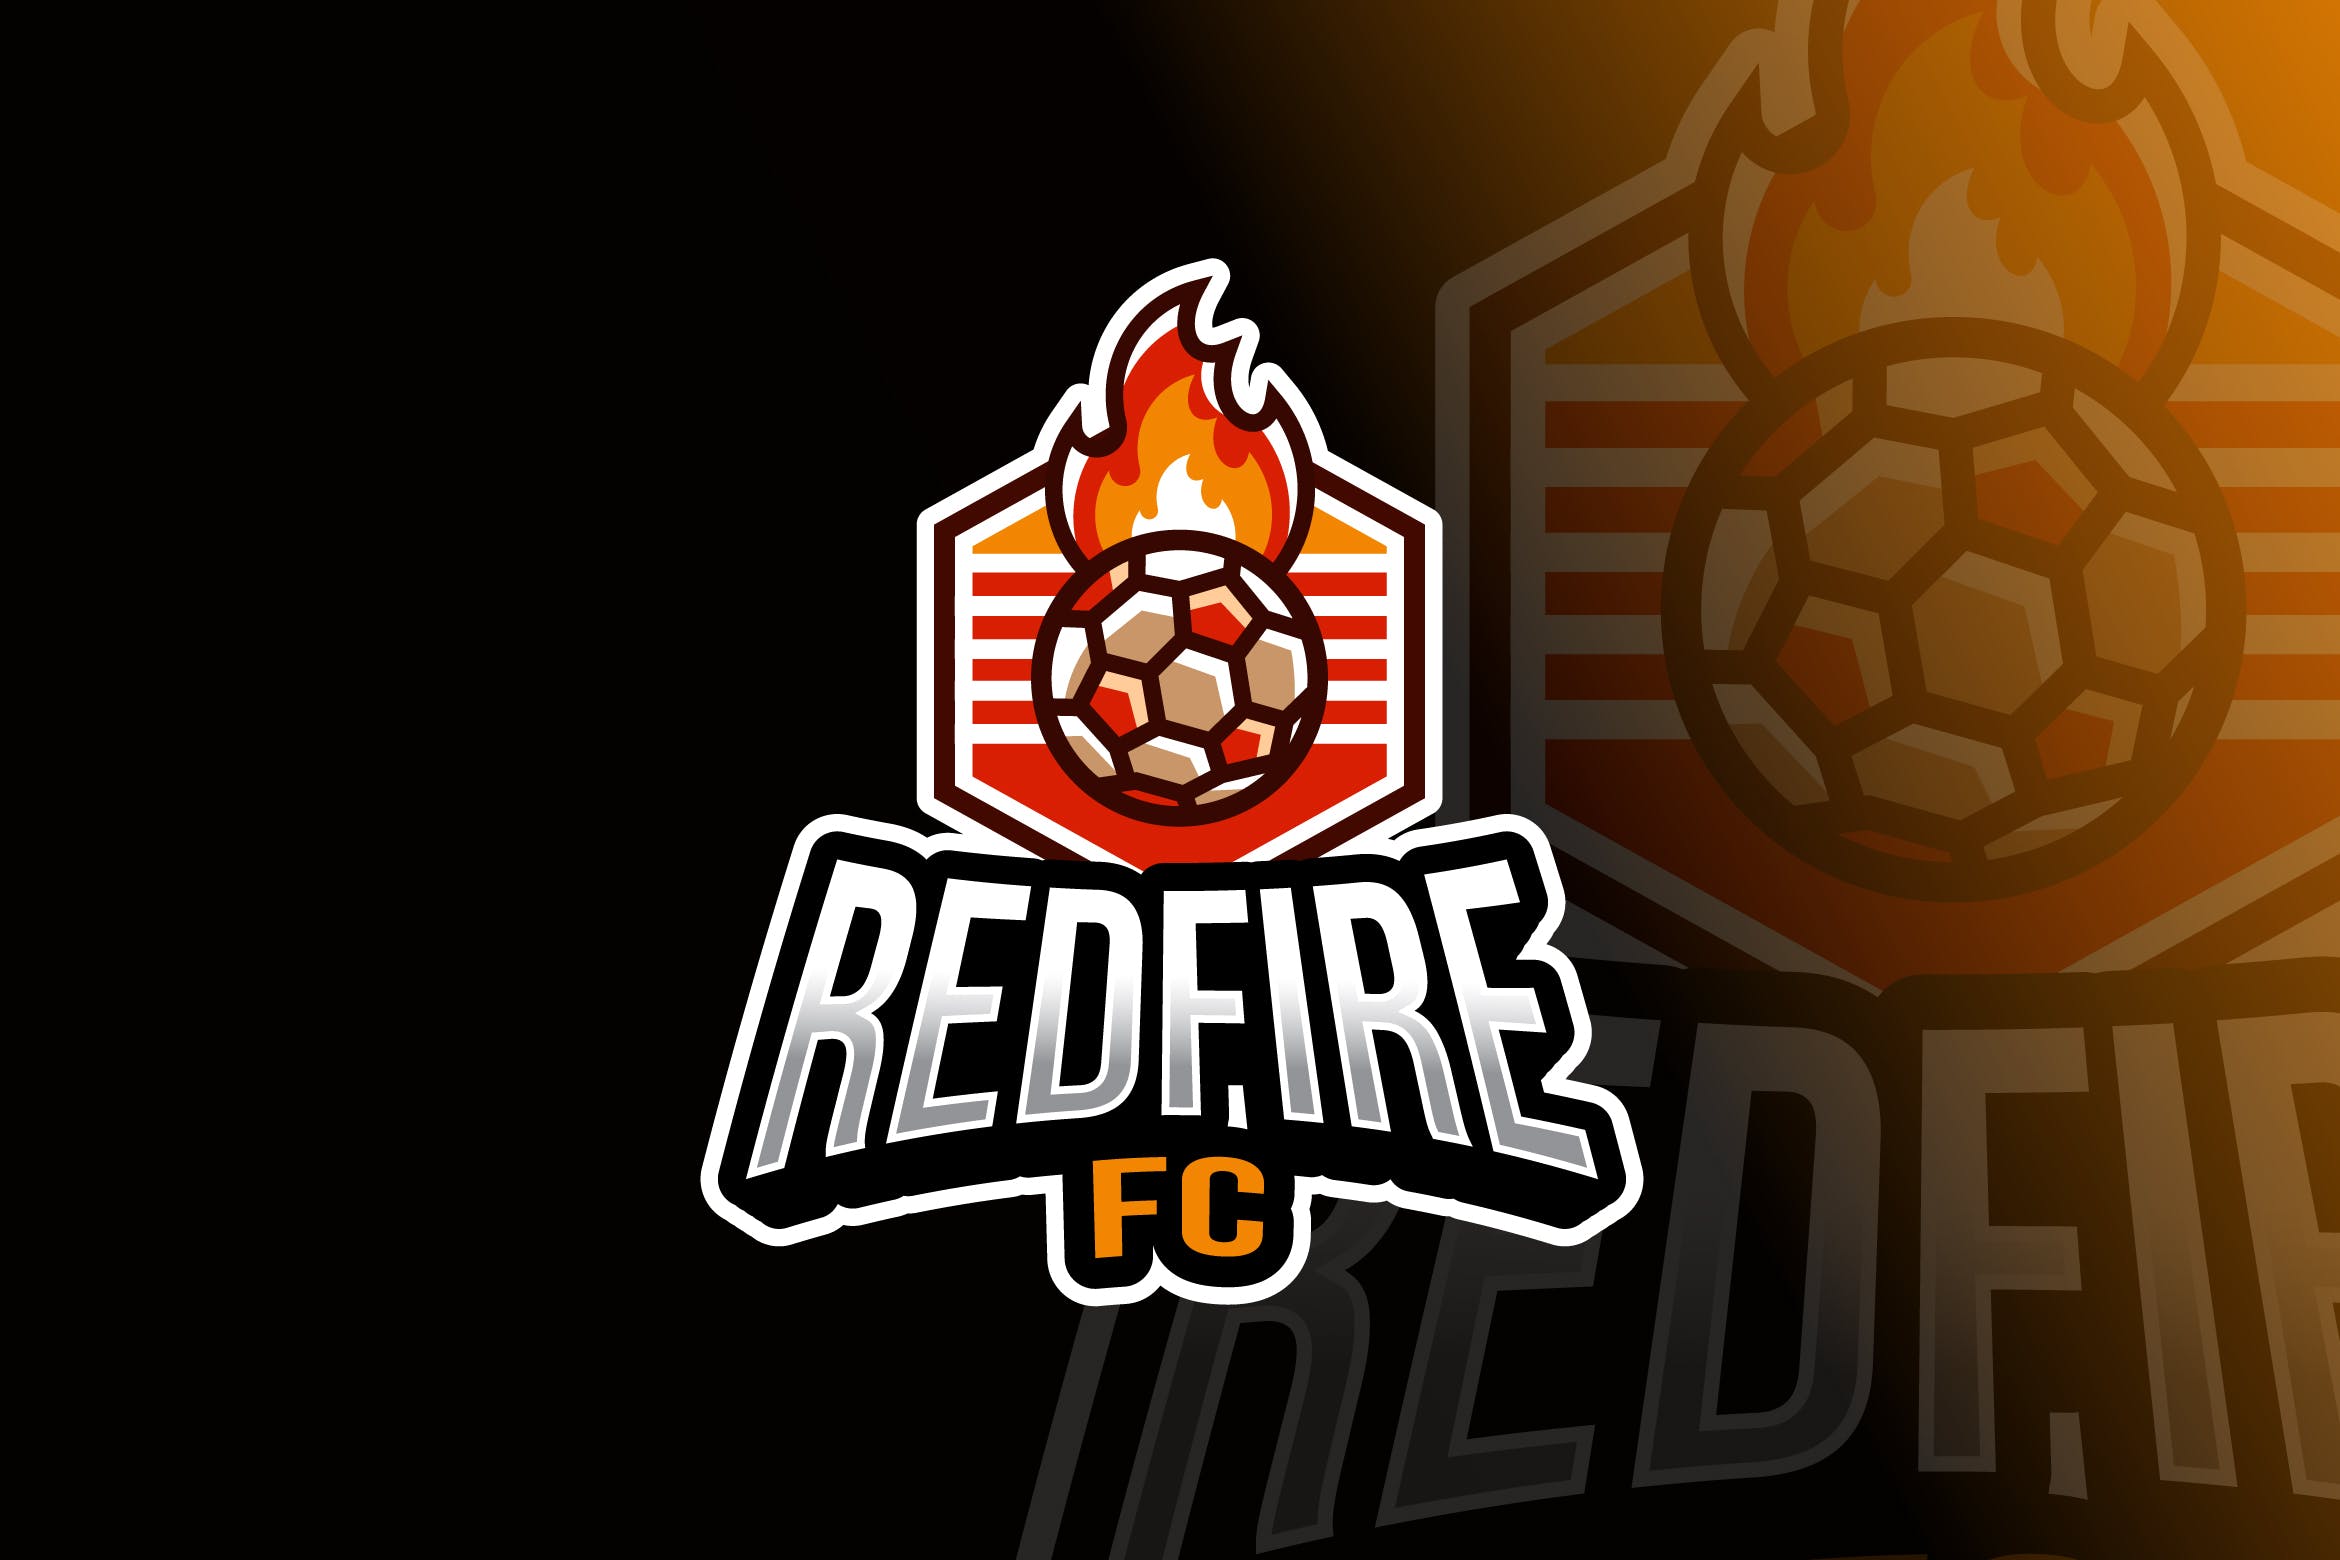 火焰足球体育竞技球队队徽设计模板 Soccer Fire Ball Logo Template插图